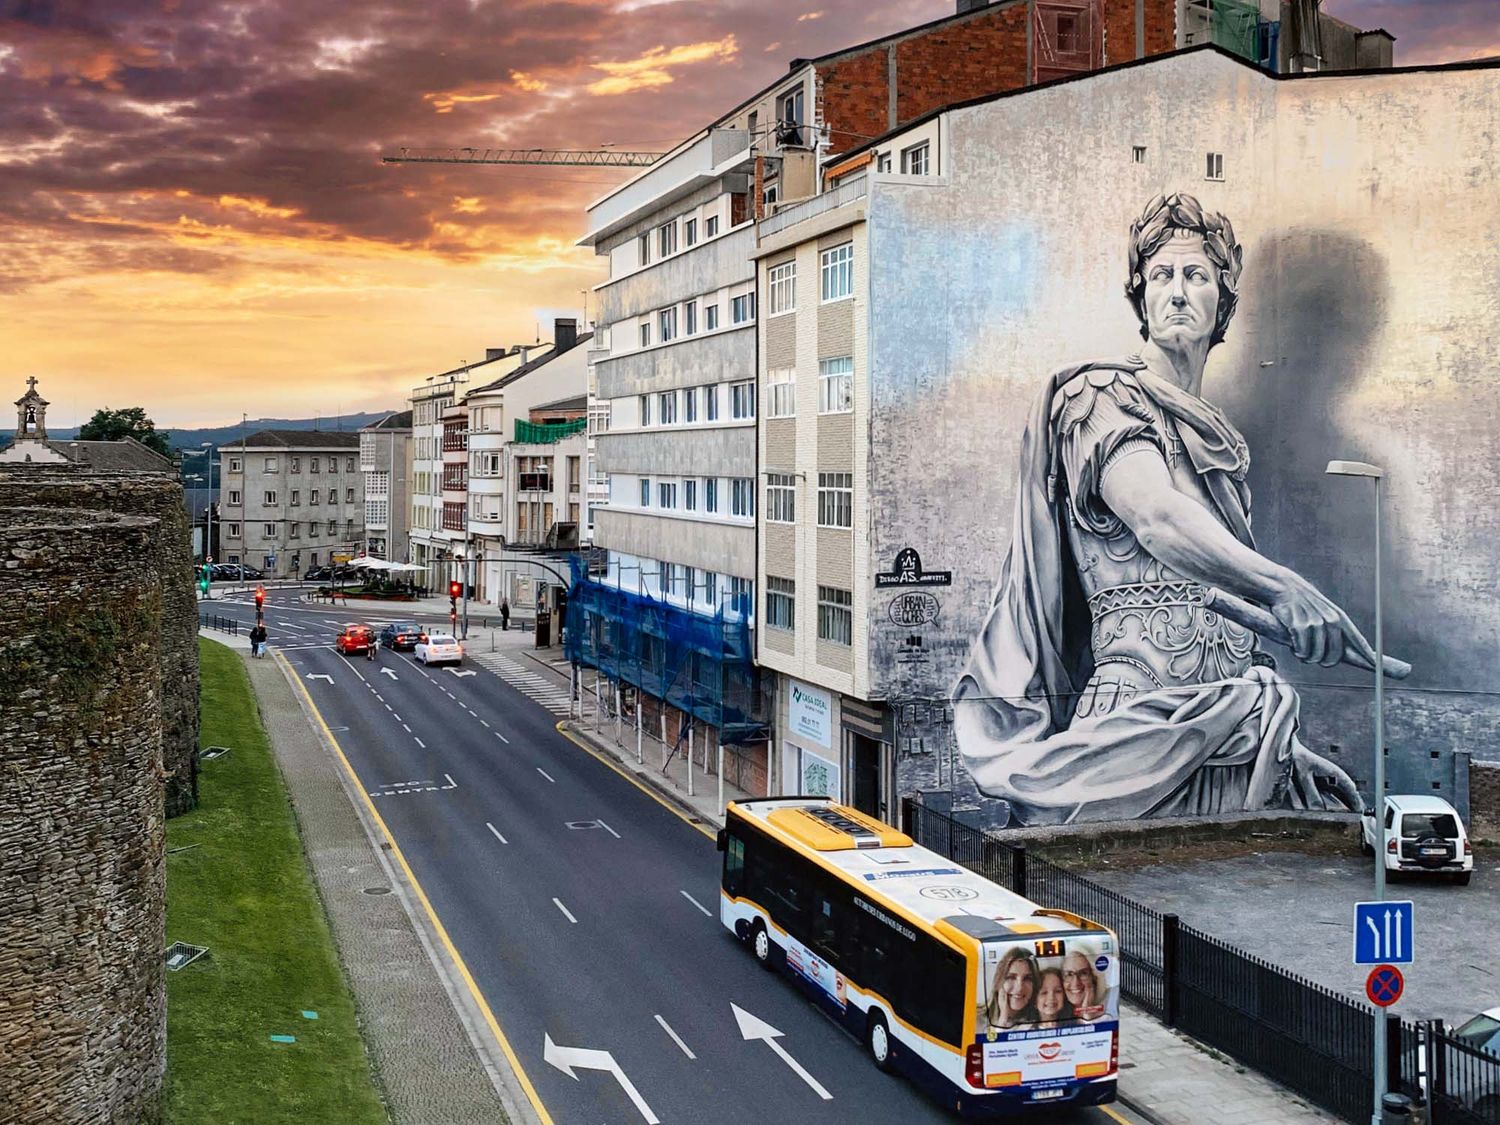 Ce portrait de Jules César réalisé par Diego AS à Lugo n'a pas volé sa place de numéro un dans le best of 2021, le Street Art est définitivement un mouvement artistique incroyable (©Joaquin Caba).